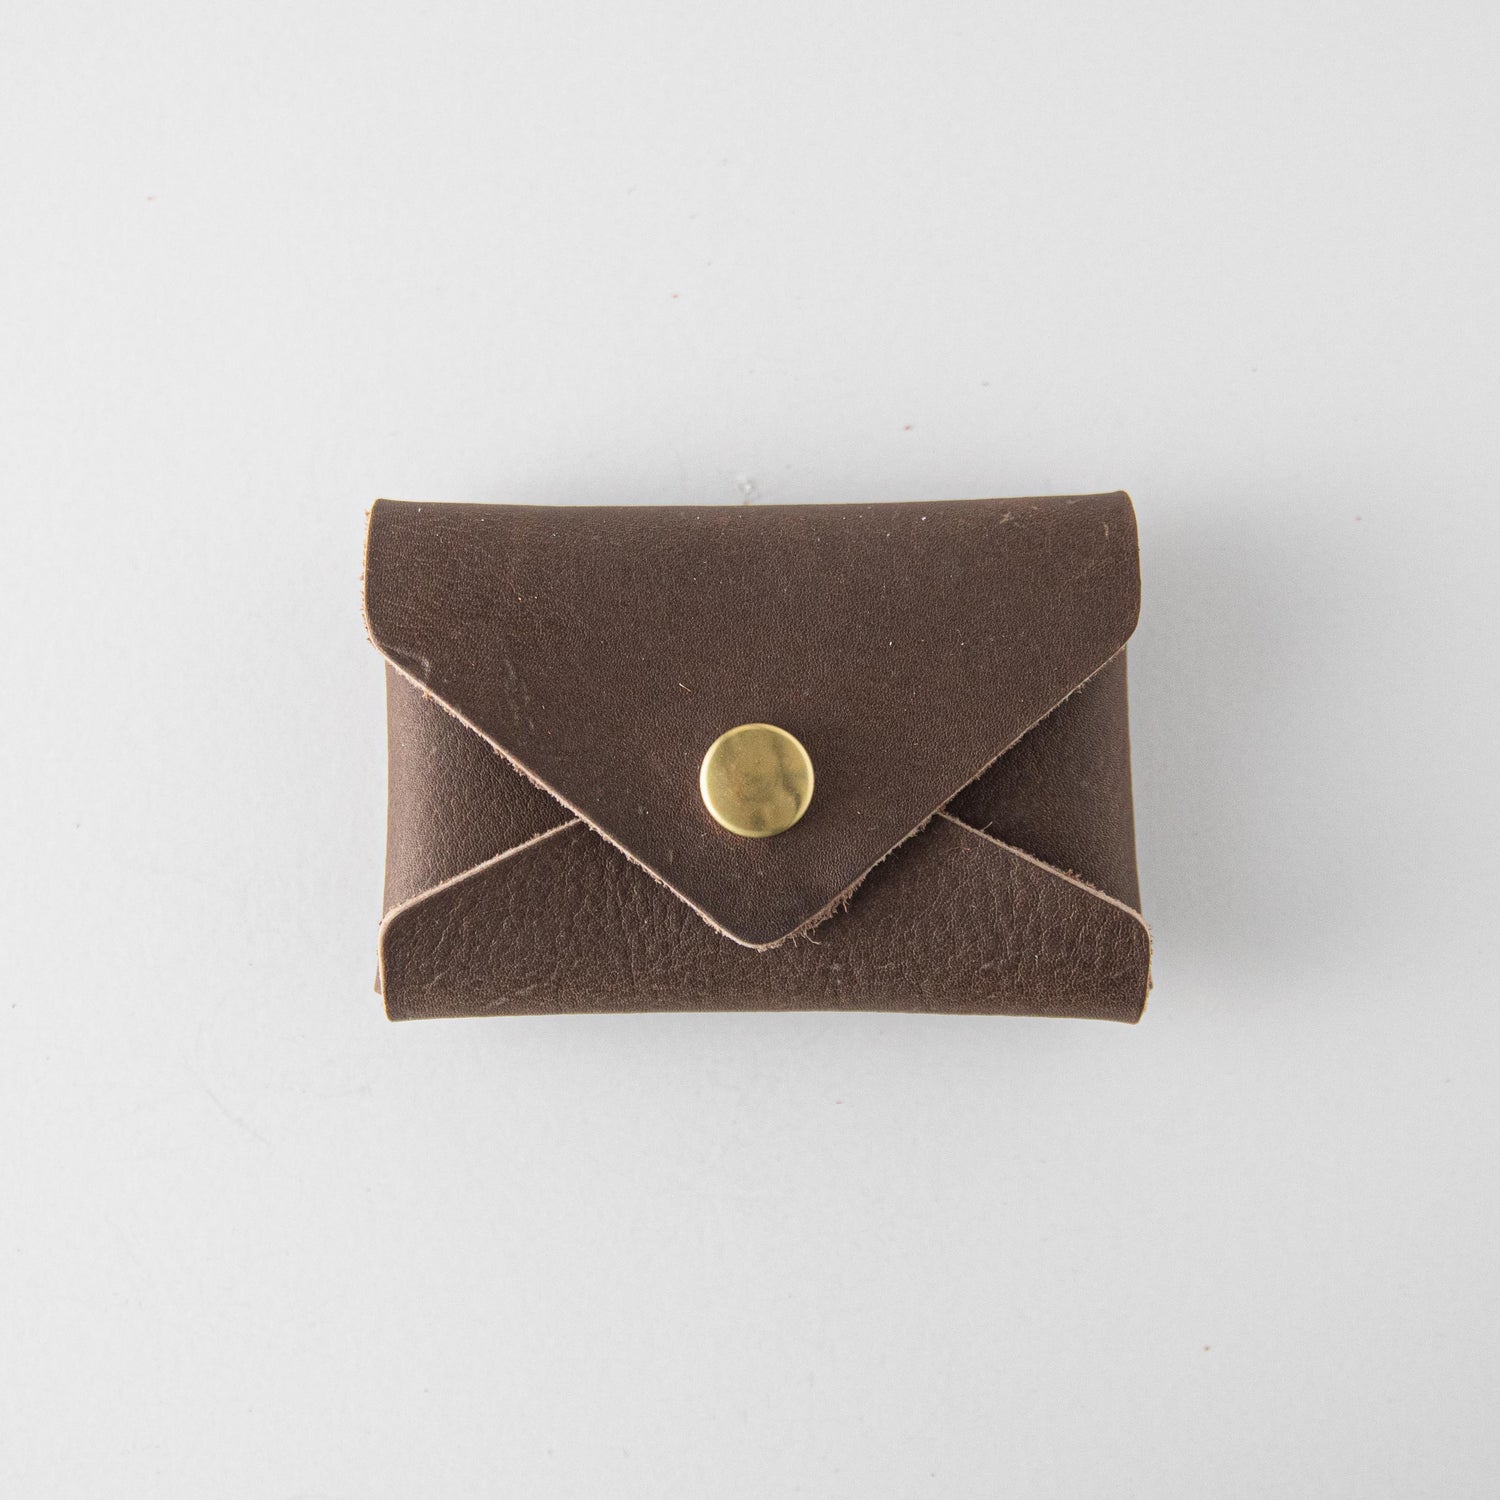 KMM & Co. Kodiak Envelope Leather Clutch